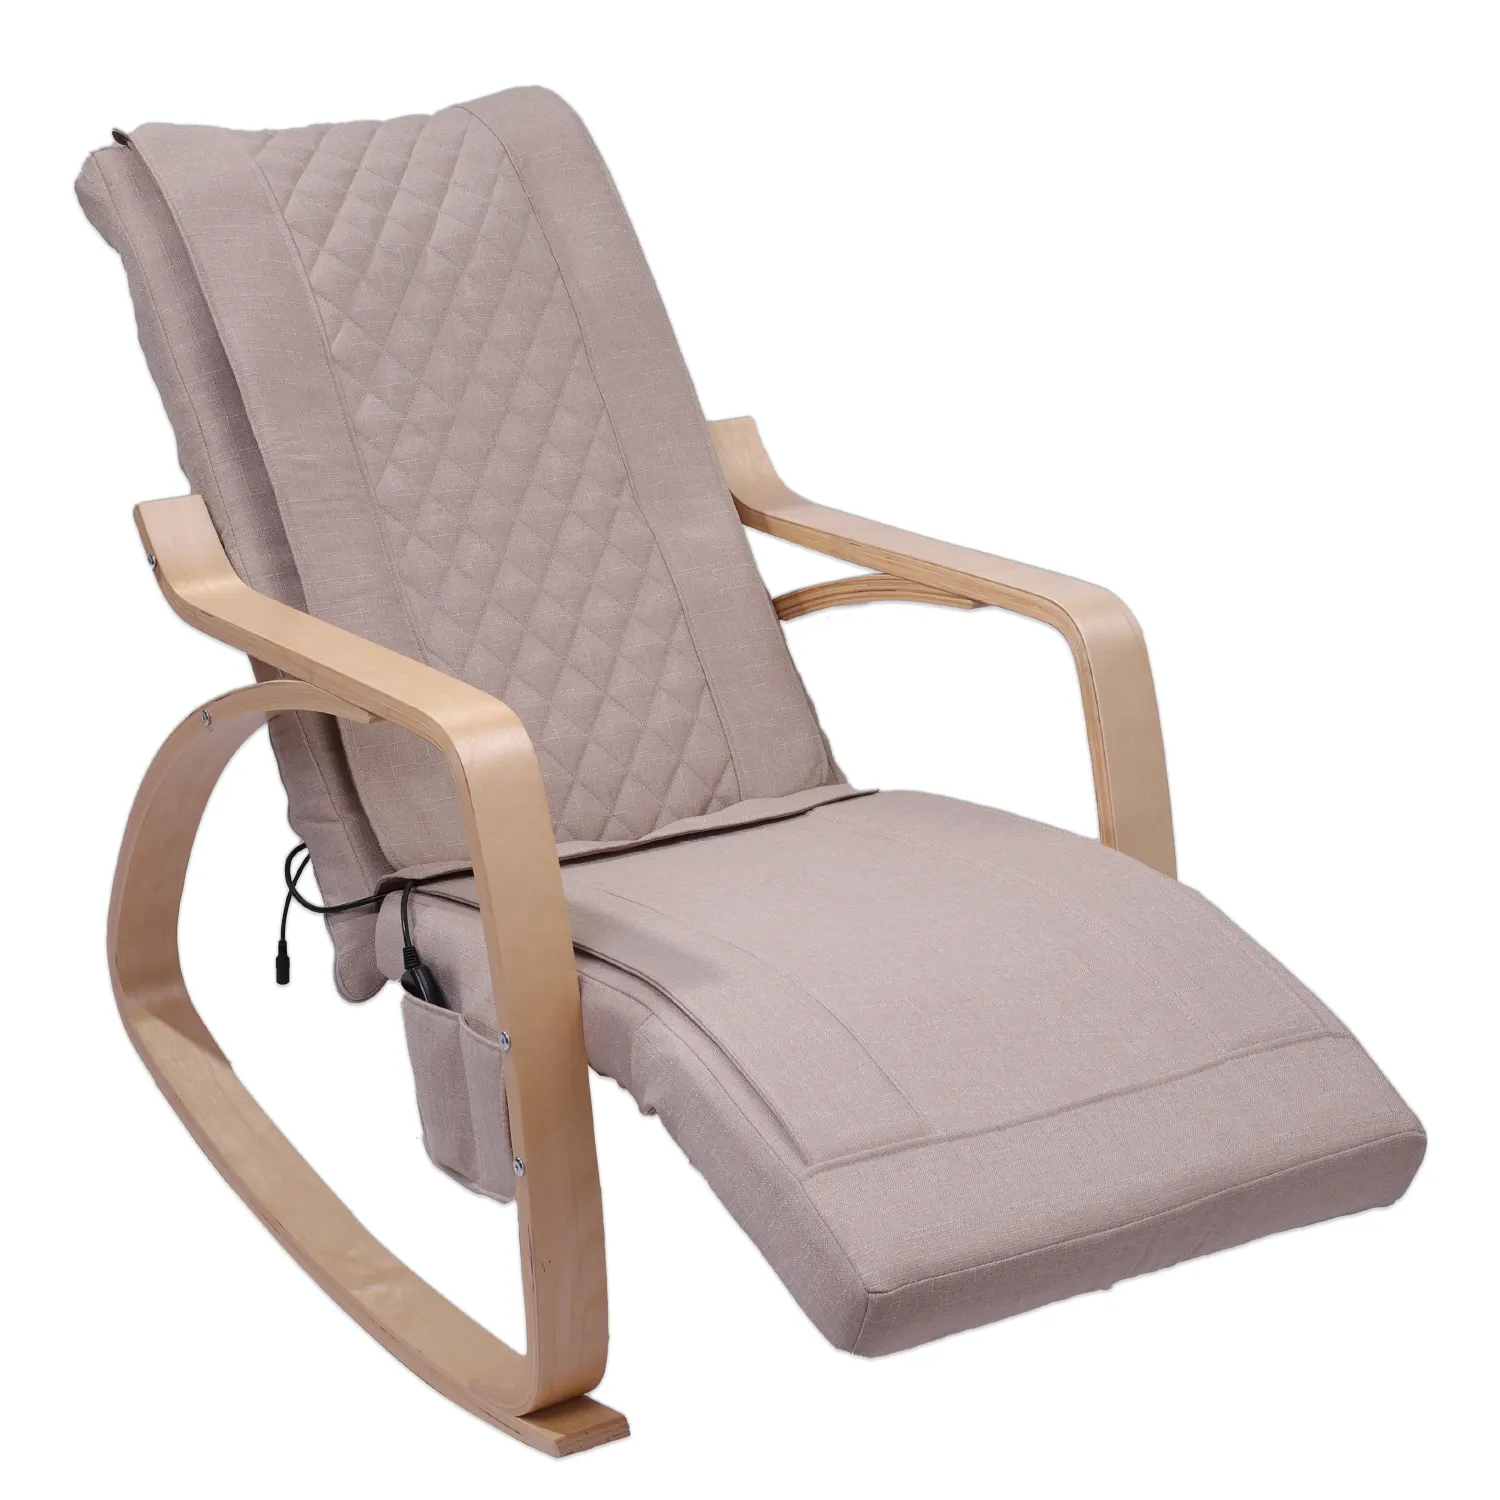 Hfr massageador de cintura e costas, massageador para homens, sofá nórdico simples e pequeno, cadeira multifuncional